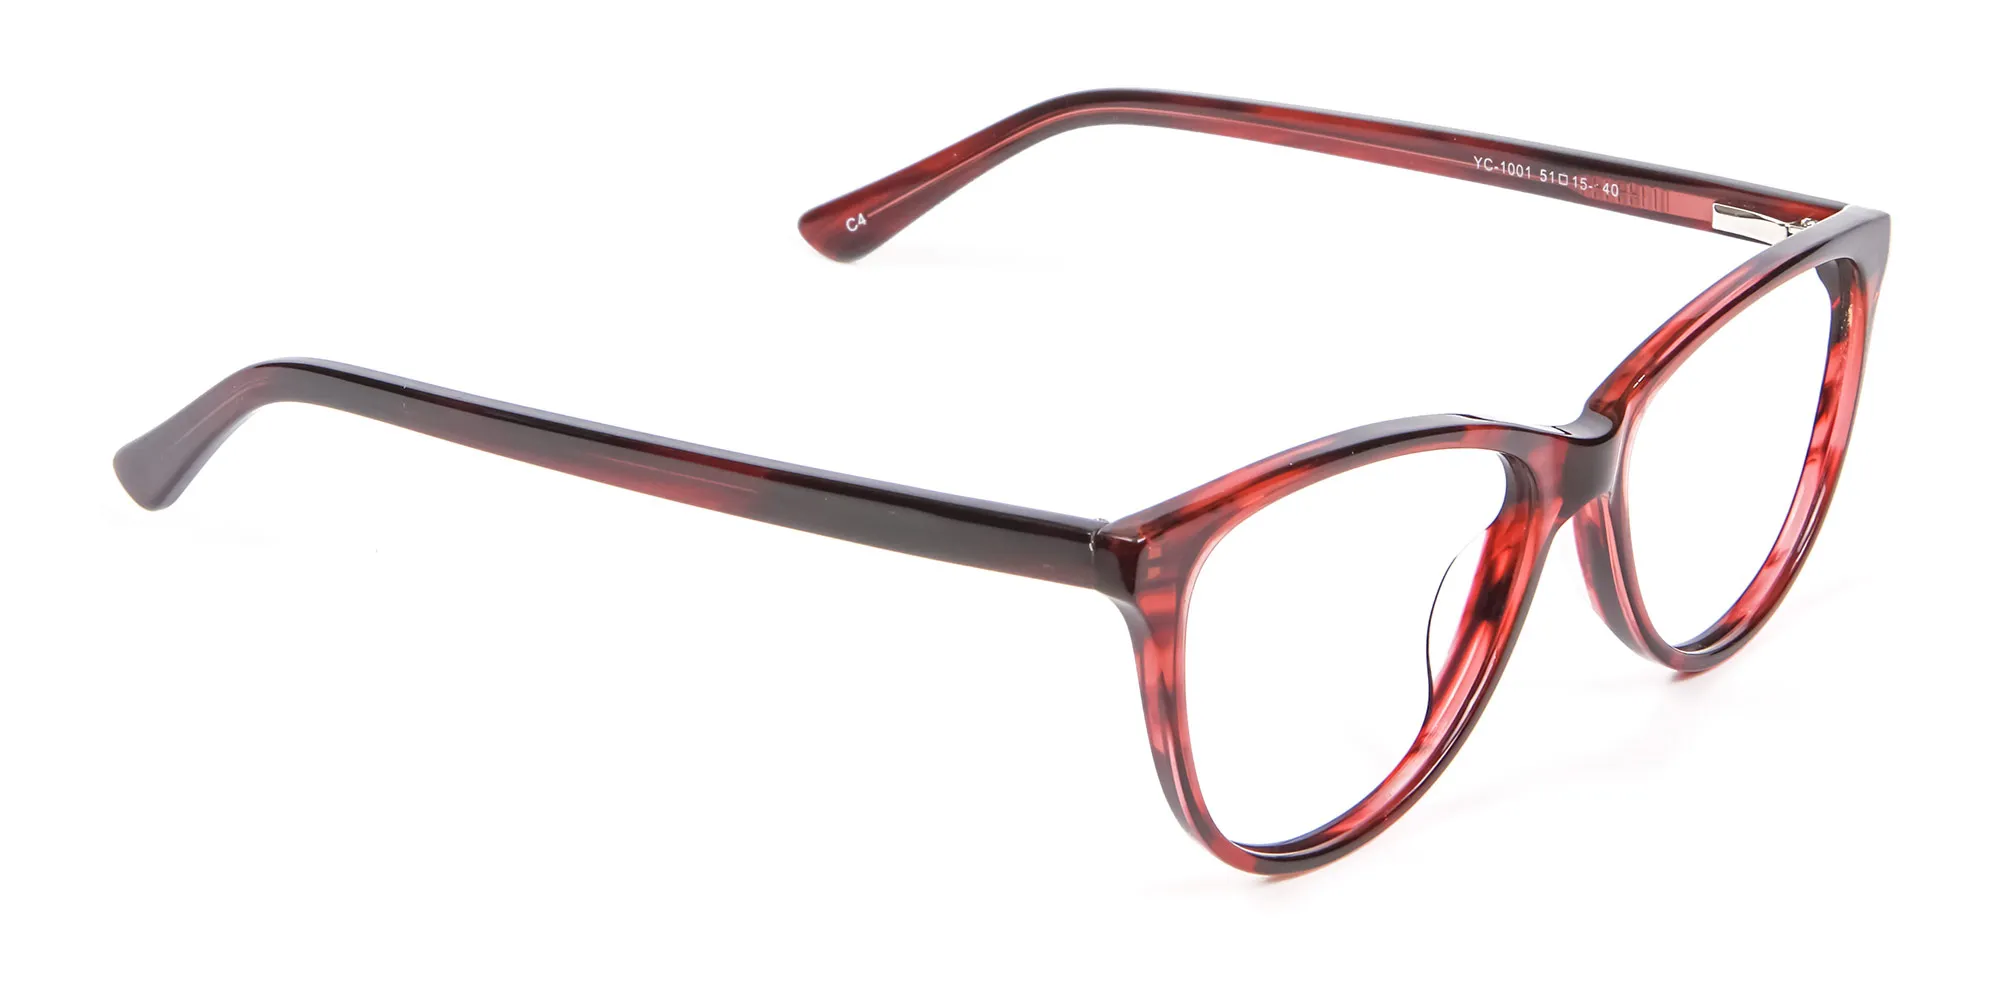 Designer Red Cat Eye Glasses for Women - 1